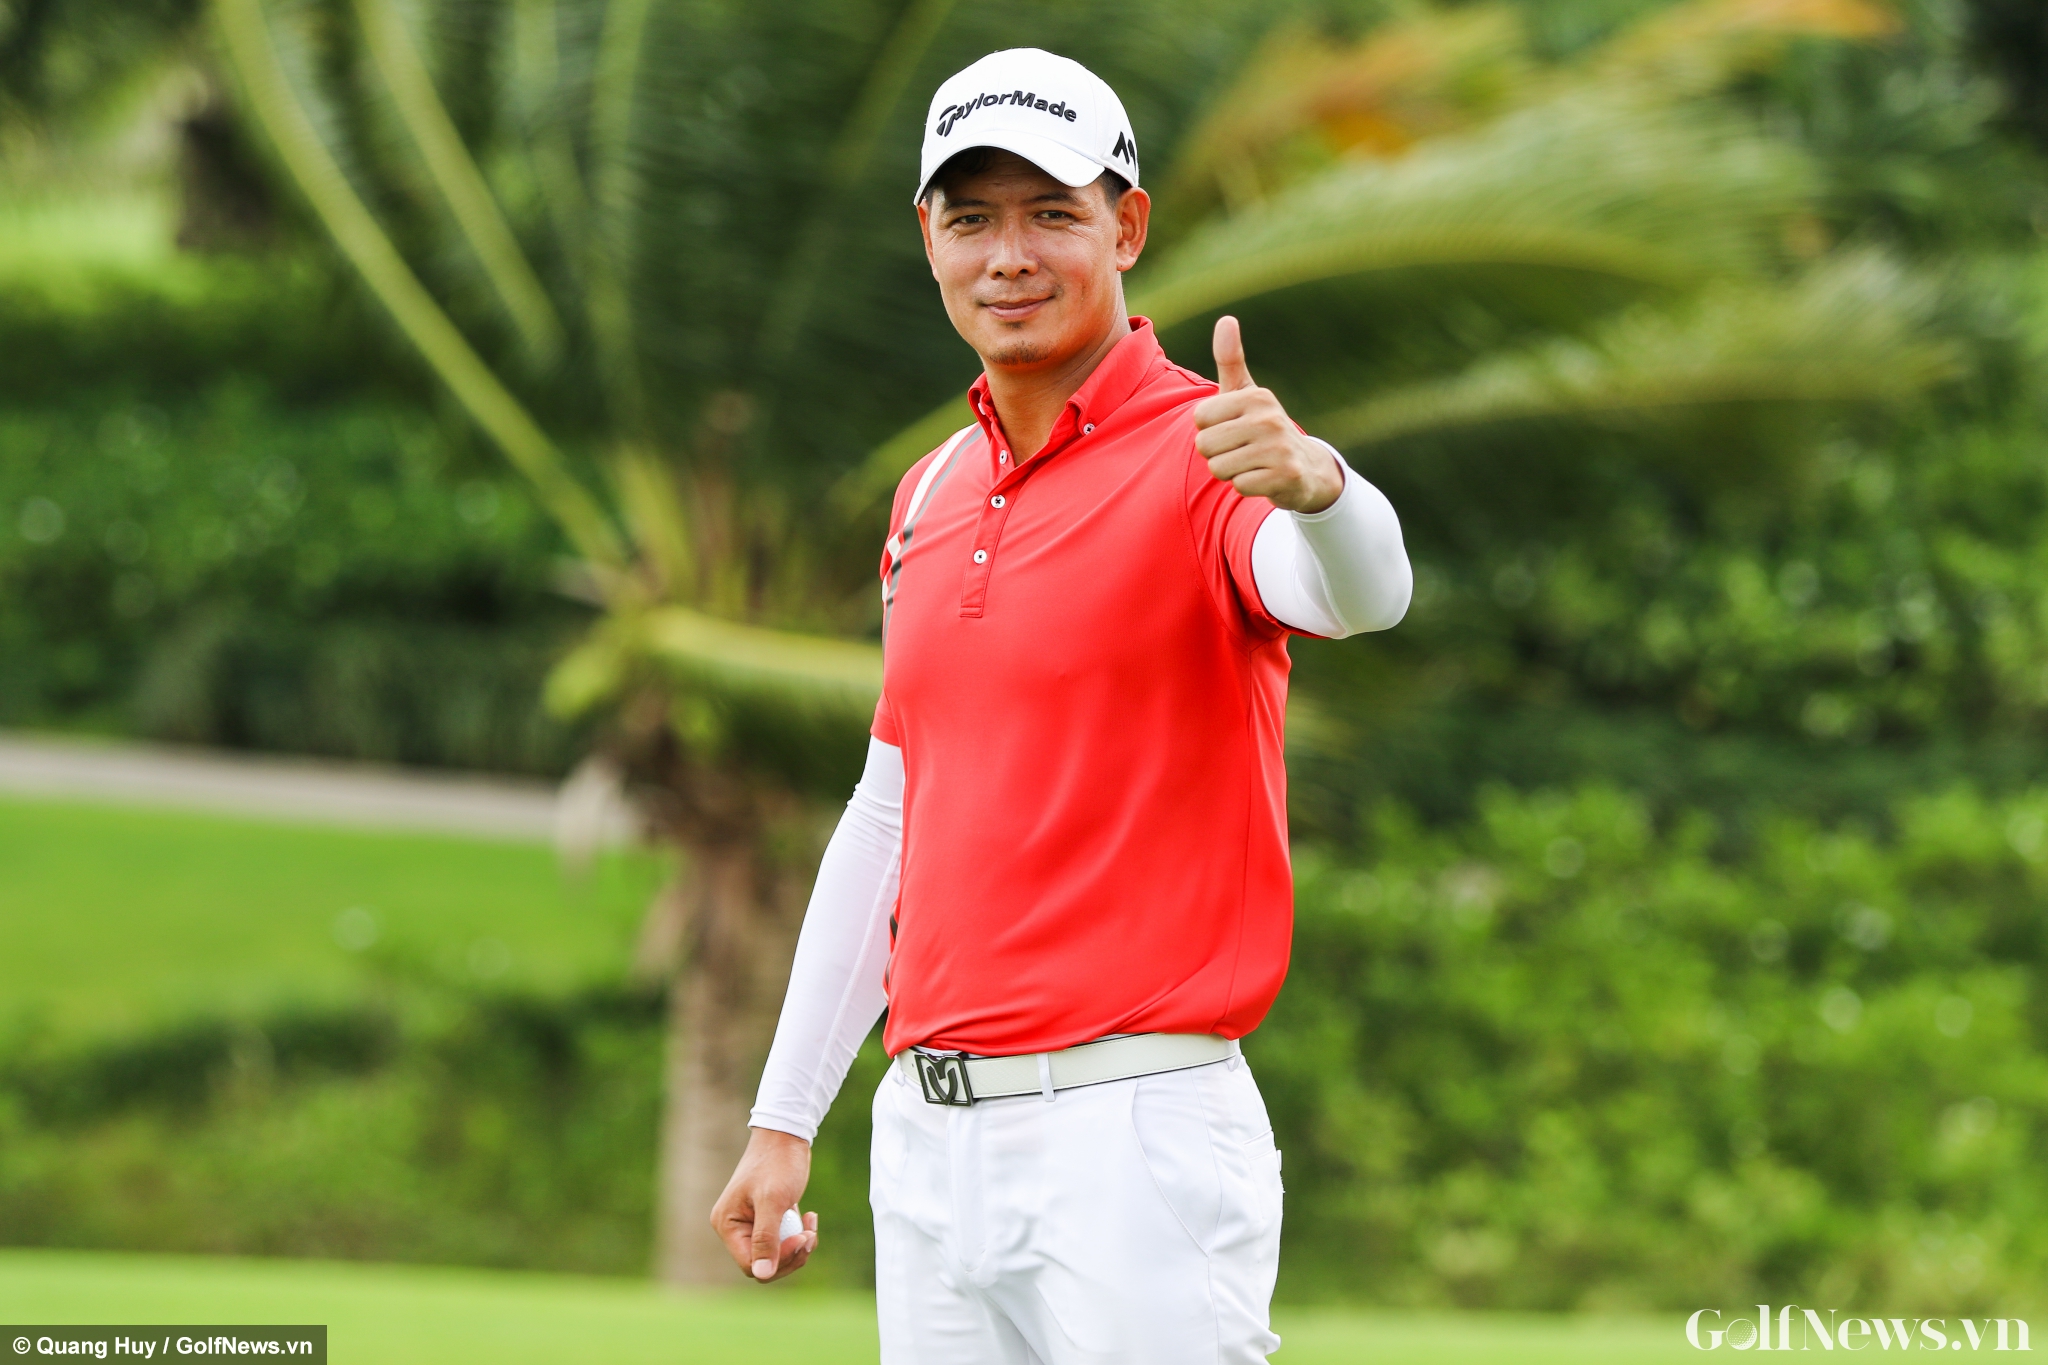 Diễn viên Bình Minh dự giải golf Từ thiện gây quỹ hỗ trợ Hiệp sĩ đường phố gặp nạn